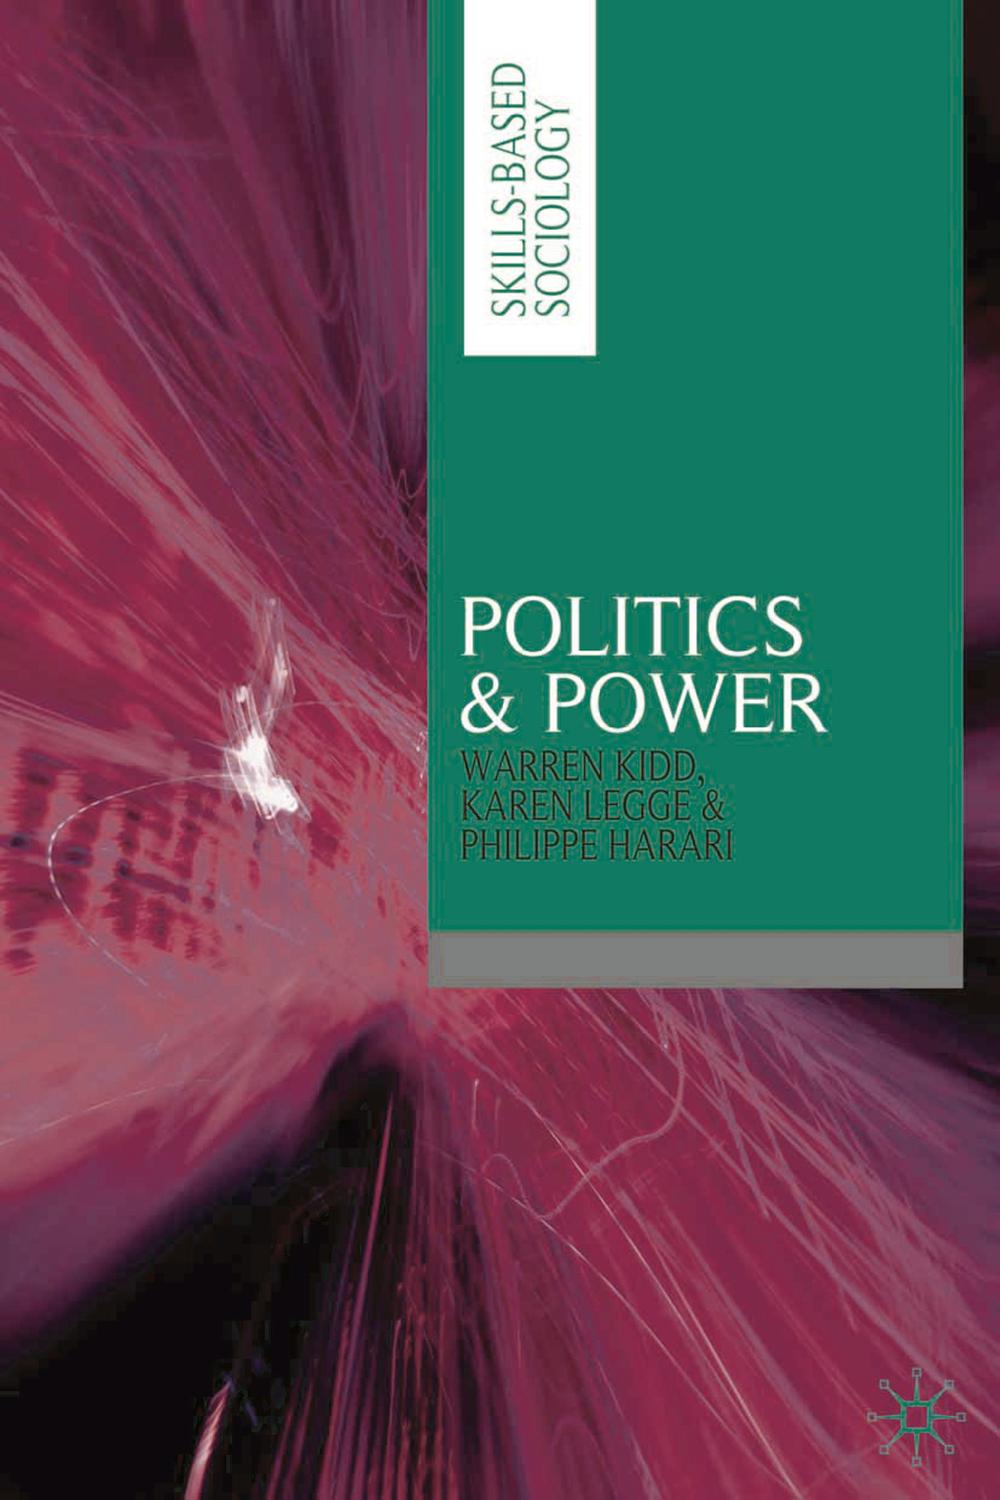 Politics & Power - Warren Kidd, Karen Legge, Philippe Harari